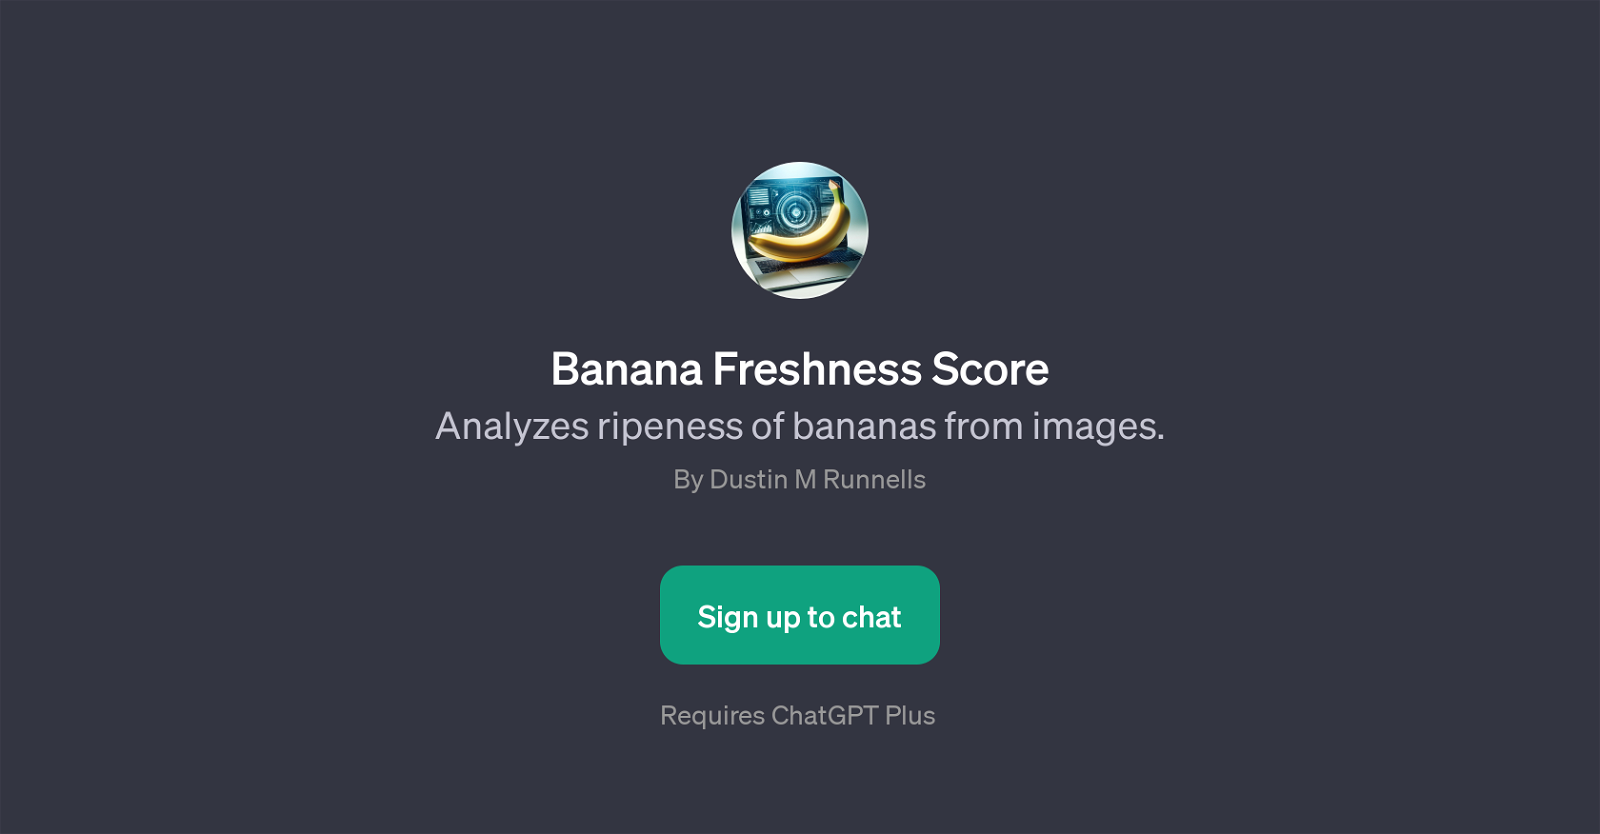 Banana Freshness Score website